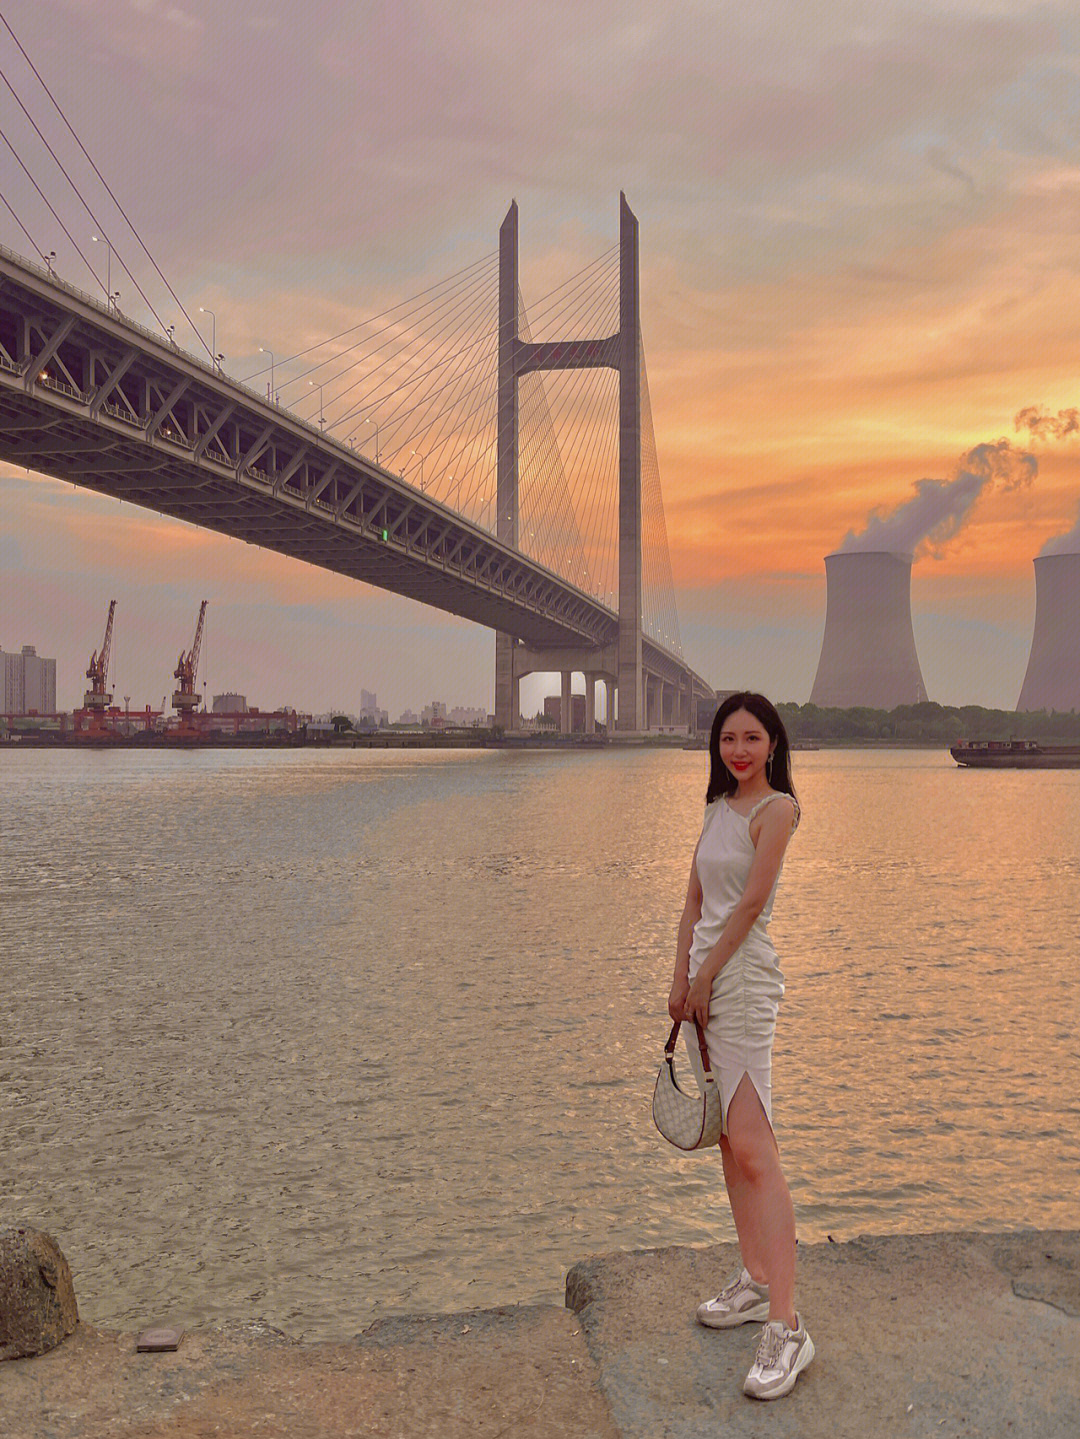 点比较远比较冷门位于浦江镇内的闵浦大桥下面具体位置可以搜杜行渡口